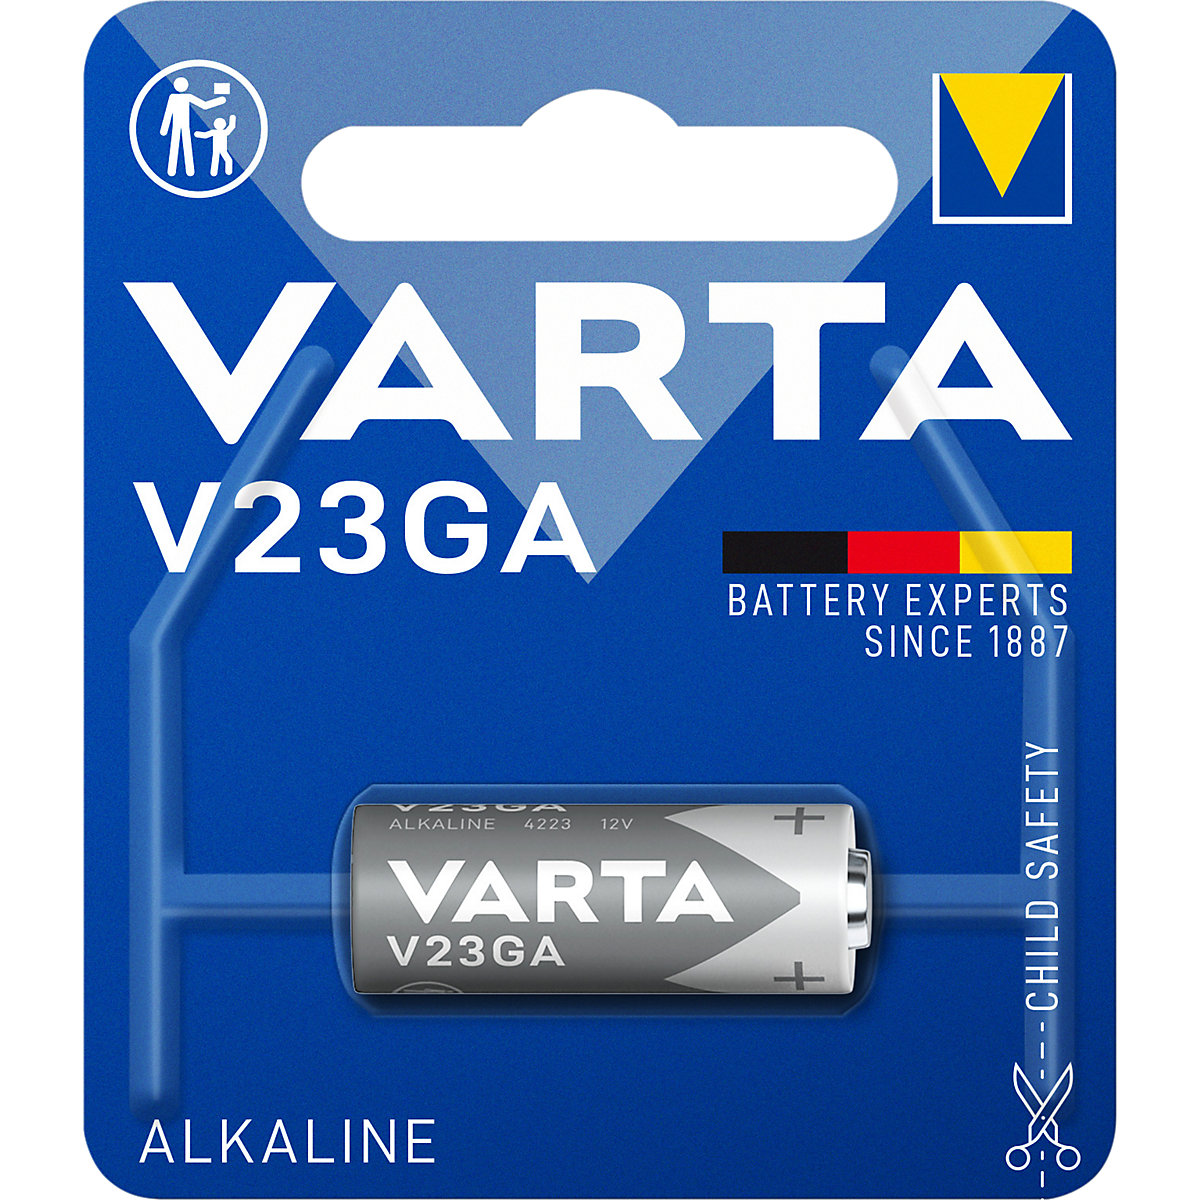 Posebna baterija ALKALINE – VARTA